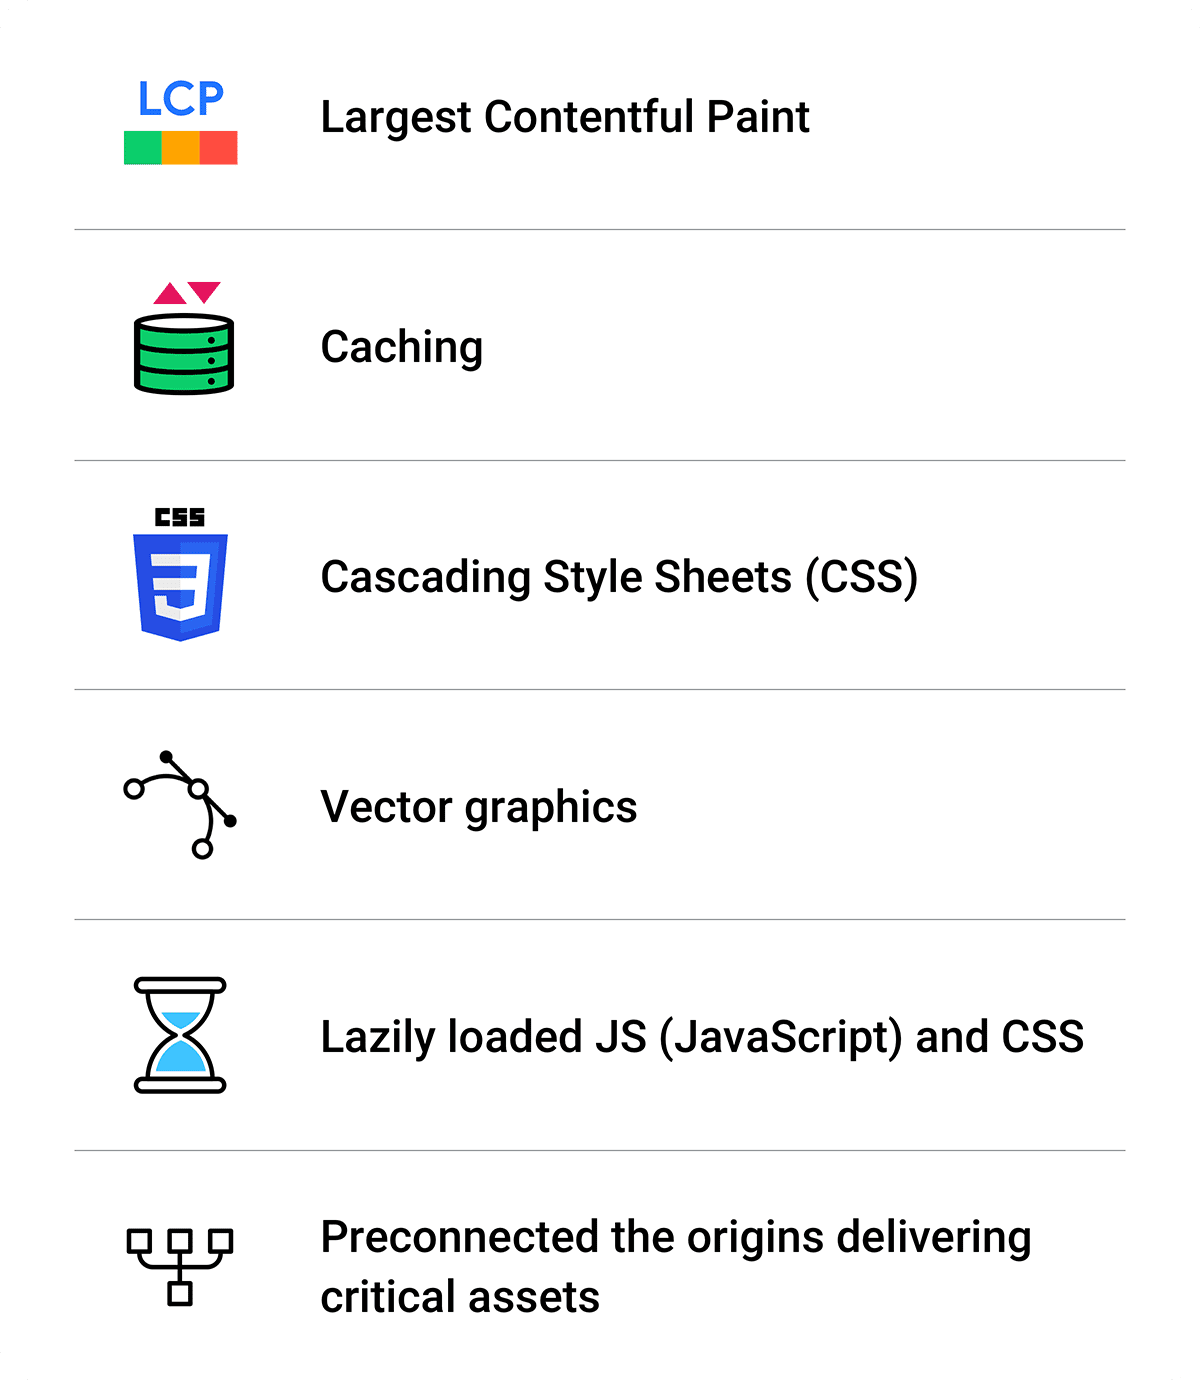 最佳化作業摘要：最大內容繪製、快取、CSS、向量圖形、延遲載入的 JS 和 CSS，以及預先連線。